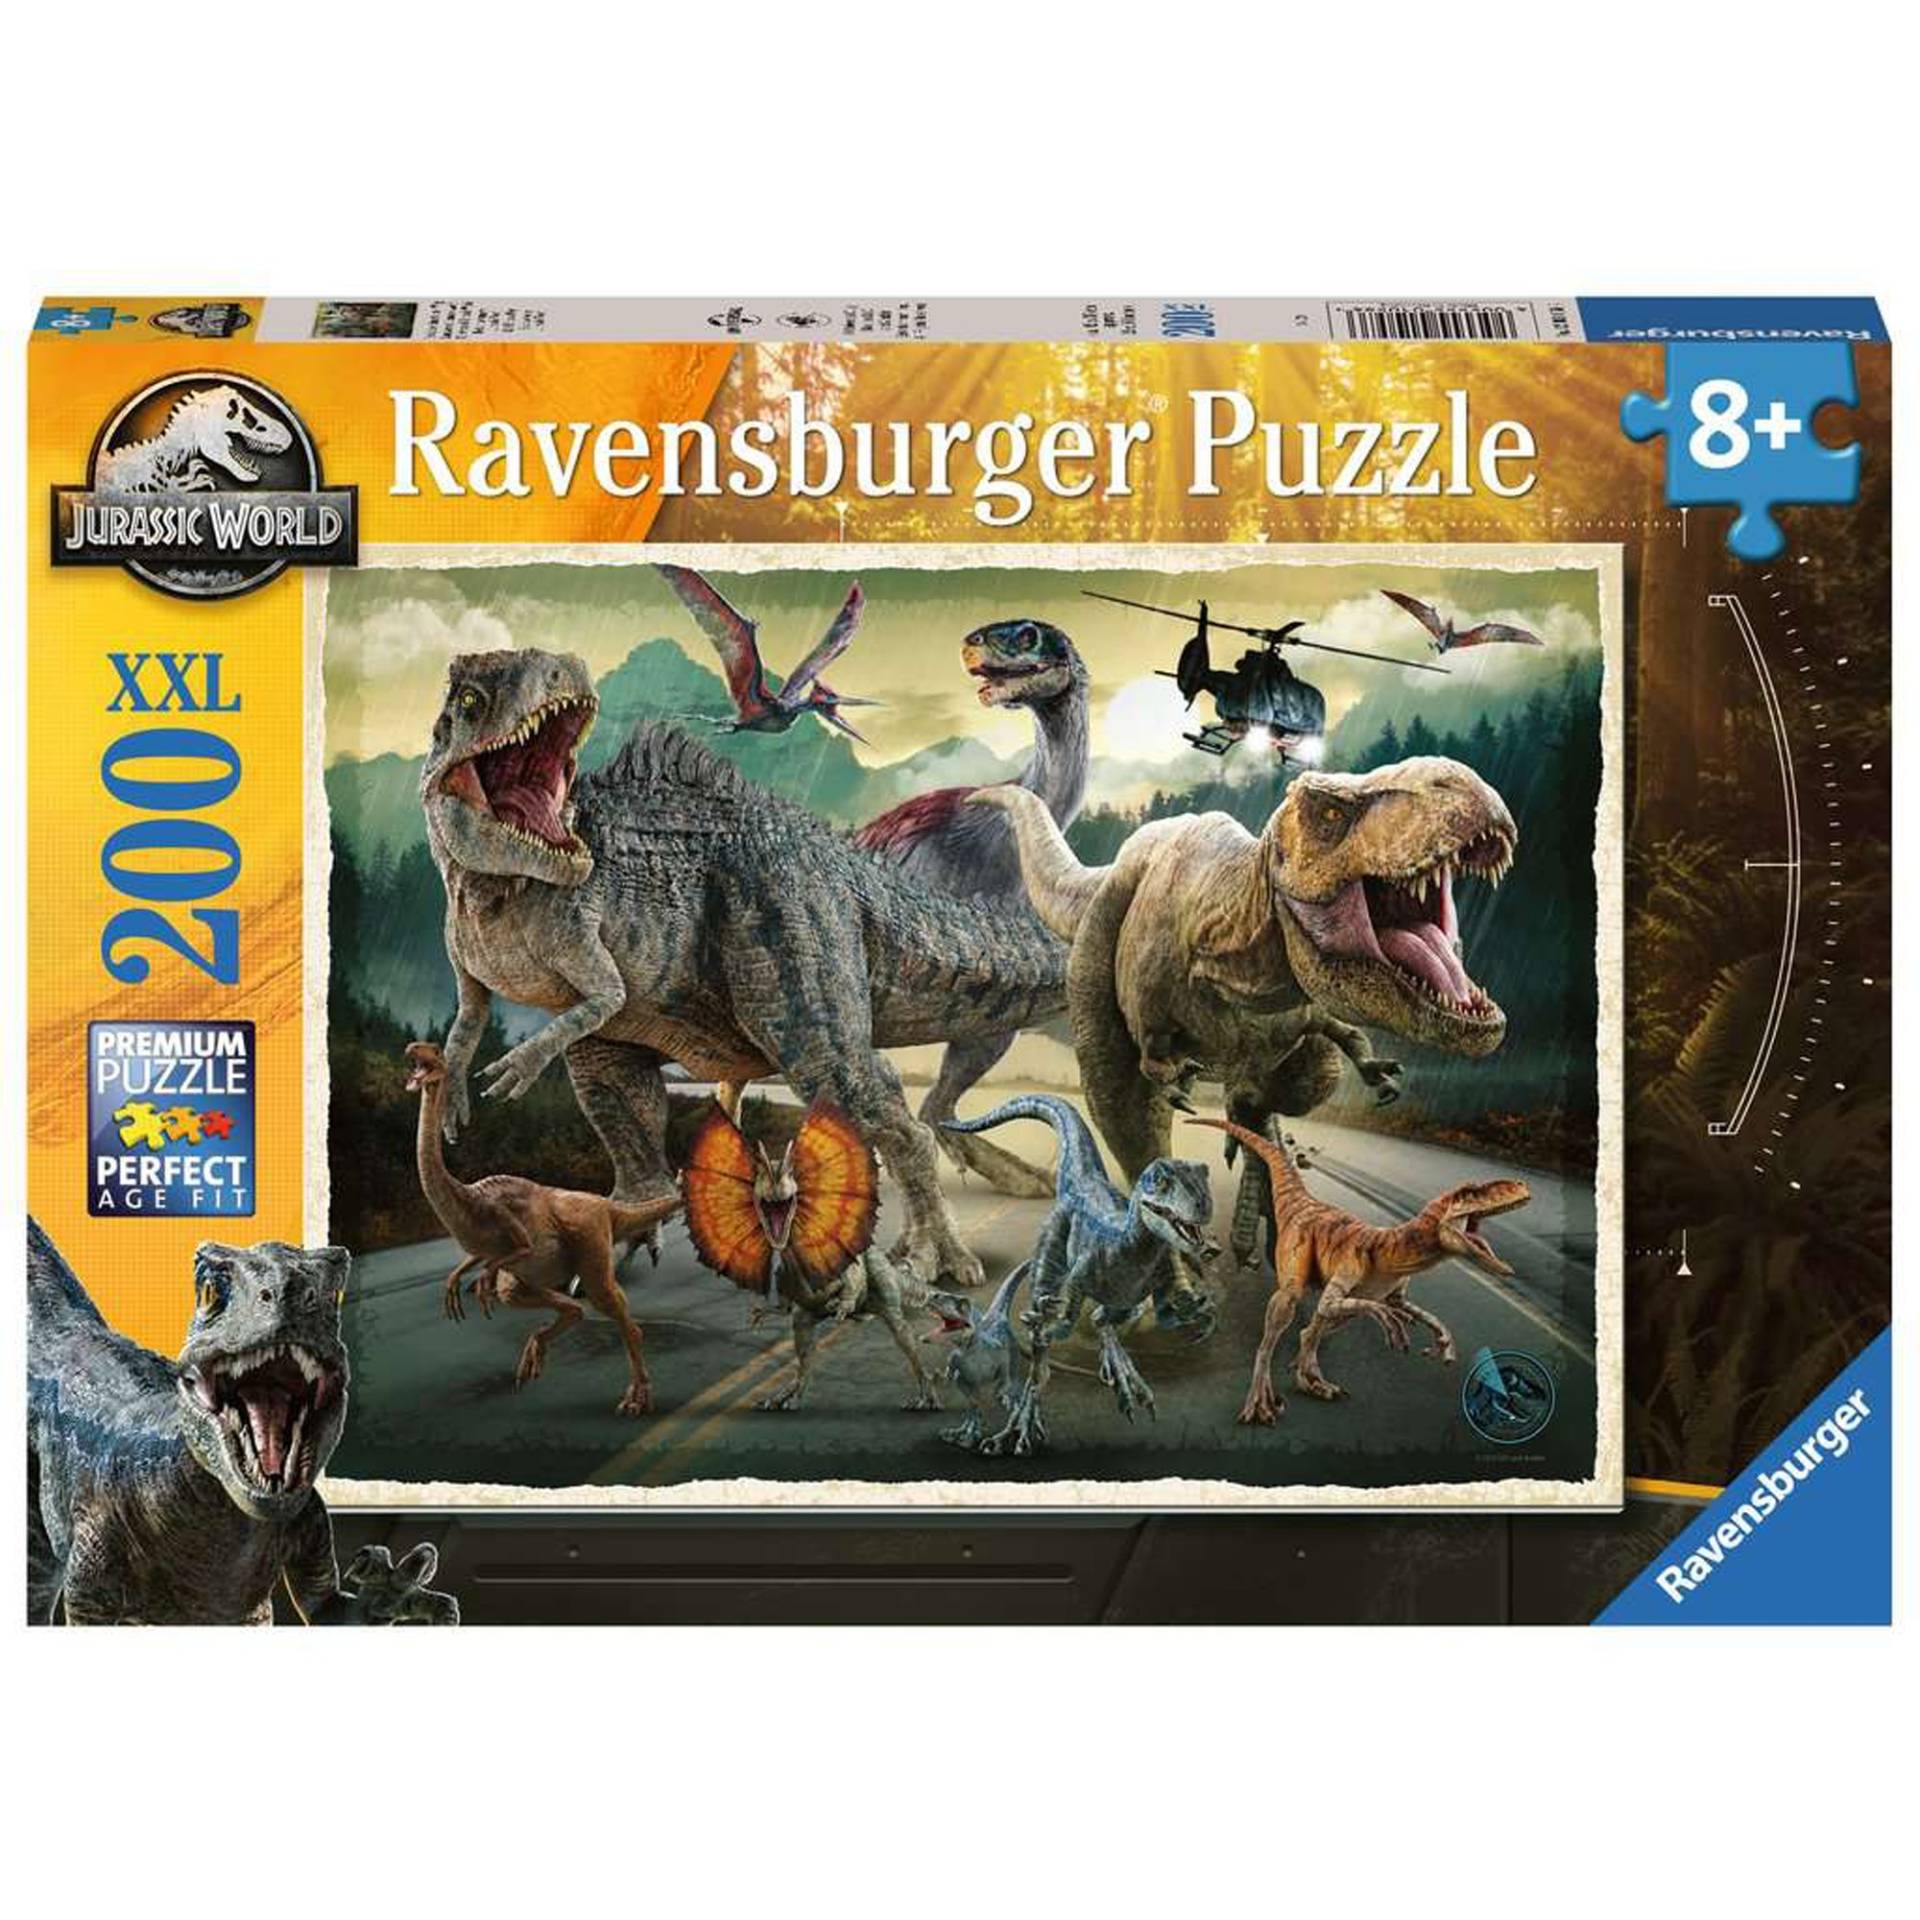 Kinderpuzzle Jurassic World Das Leben findet einen Weg von Ravensburger